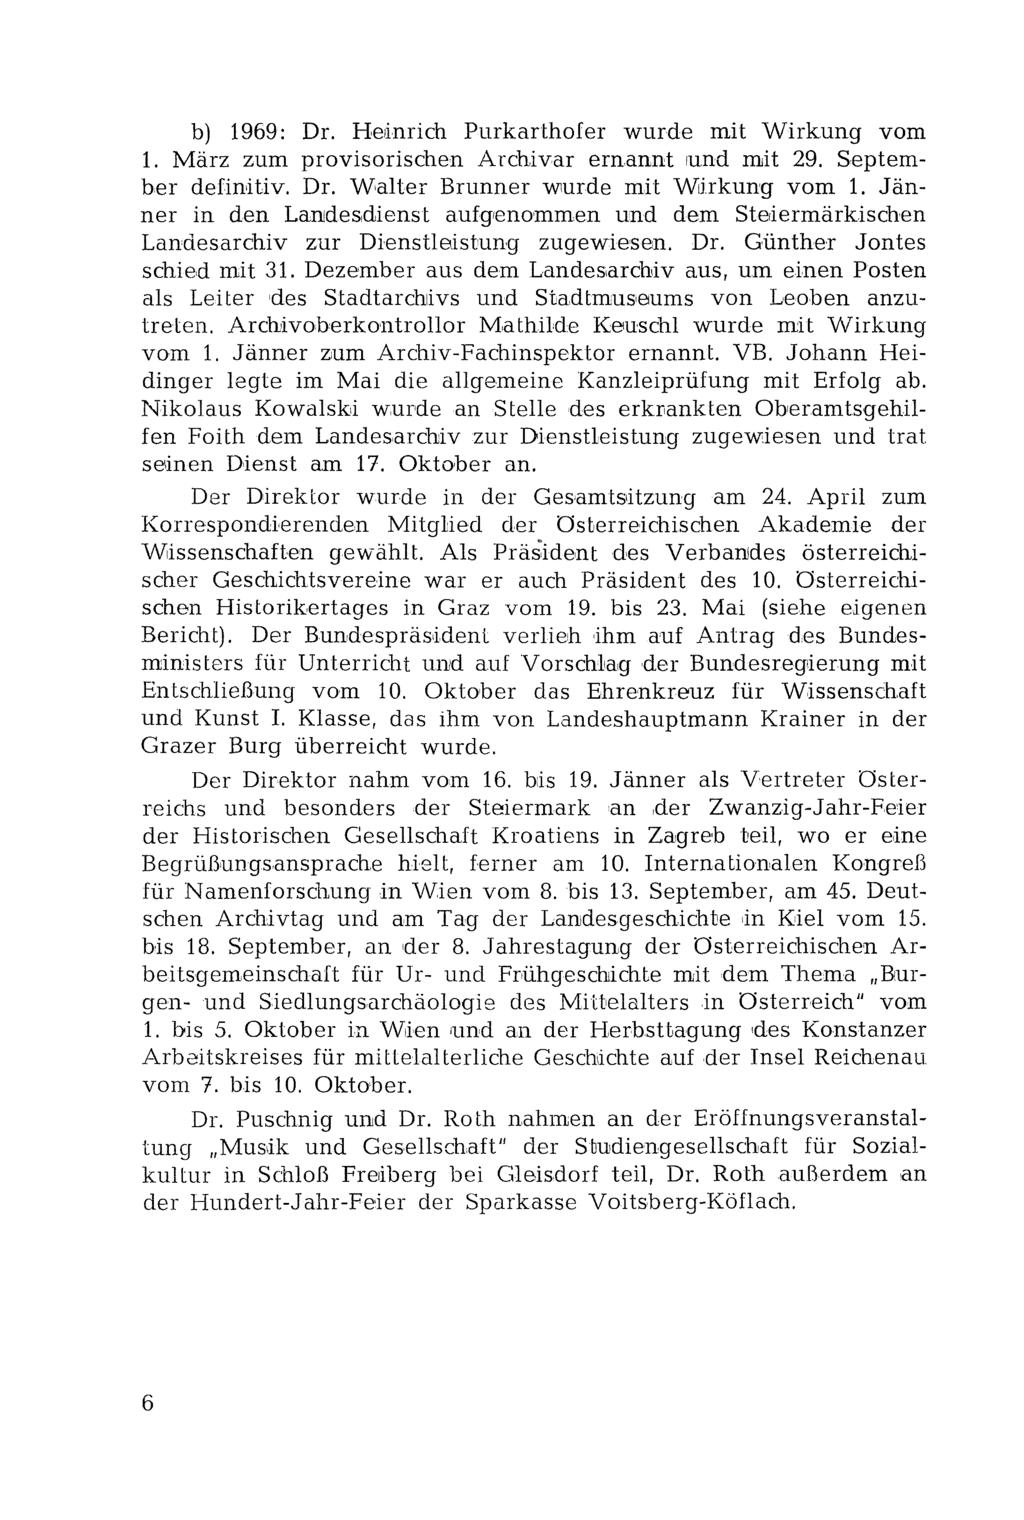 b) 1969: Dr. Heinrich Purkarthofer wurde mit Wirkung vom 1. März zum provisorischen Archivar ernannt und mit 29. September definitiv, Dr. Walter Brunner wurde mit Wirkung vom 1.